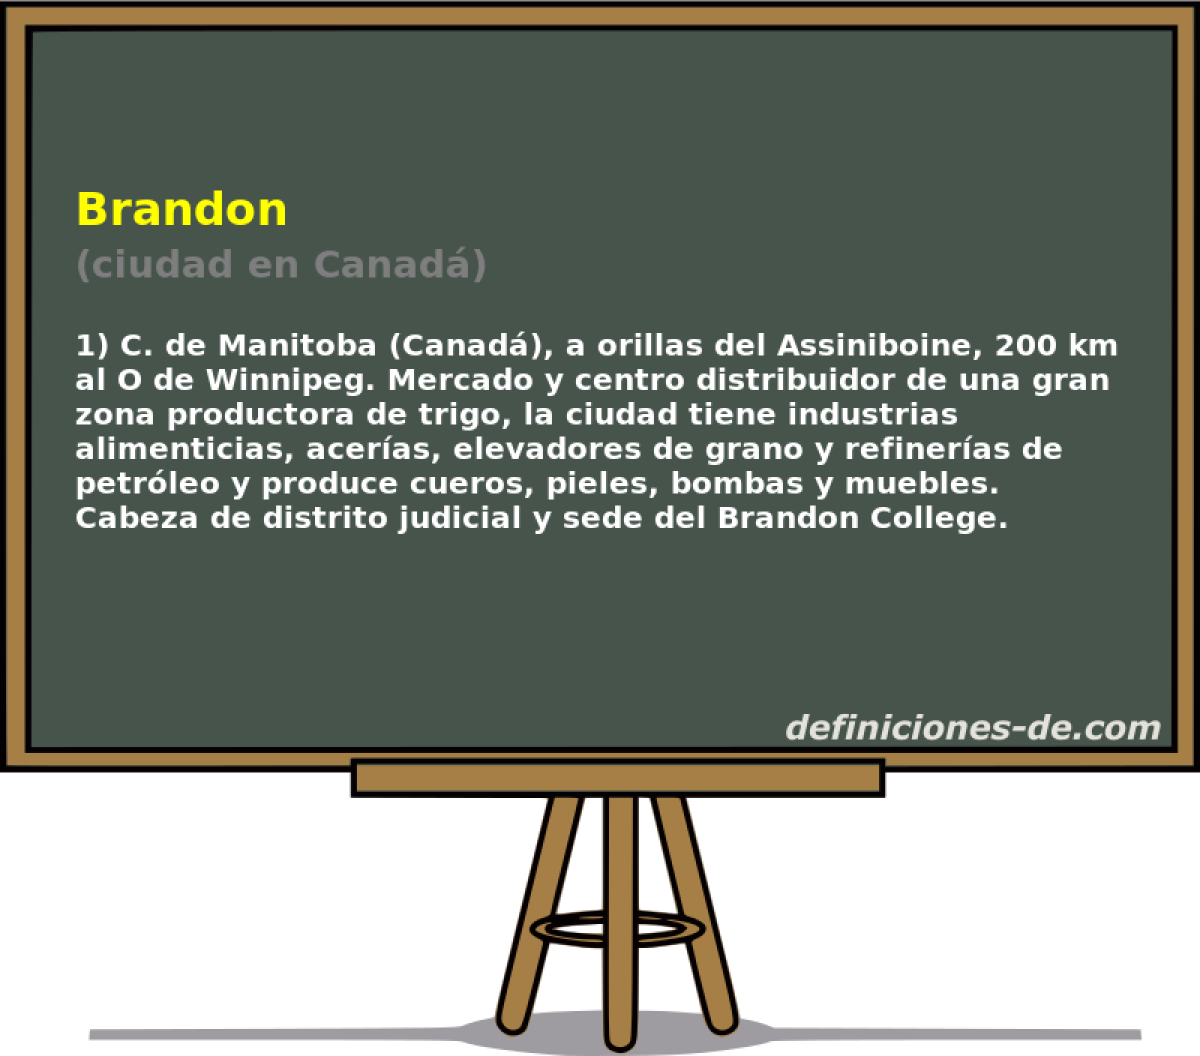 Brandon (ciudad en Canad)